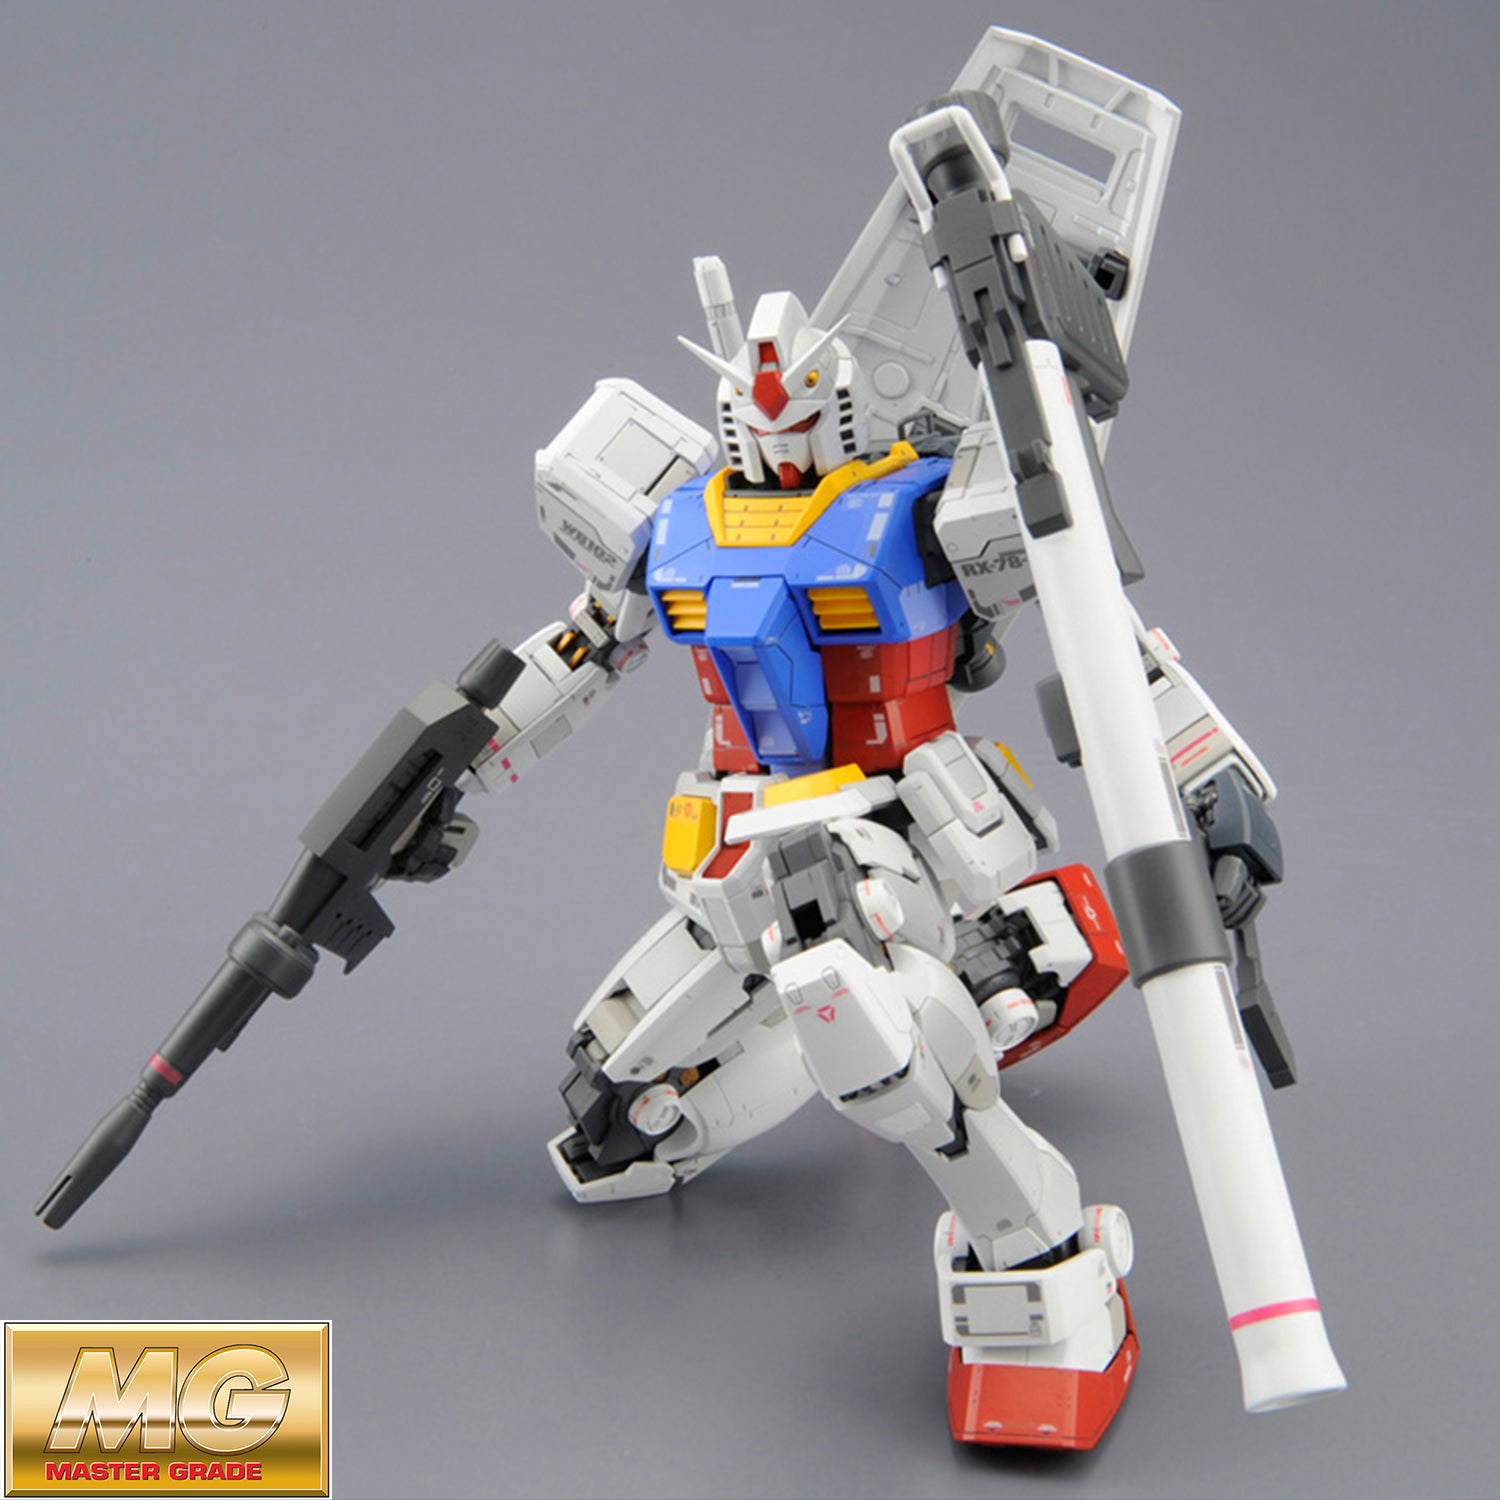 Bandai Hobby Gundam Rx 78 2 Gundam Ver 1 5 Mg 1 100 Scale Gundam Toys Hobbies